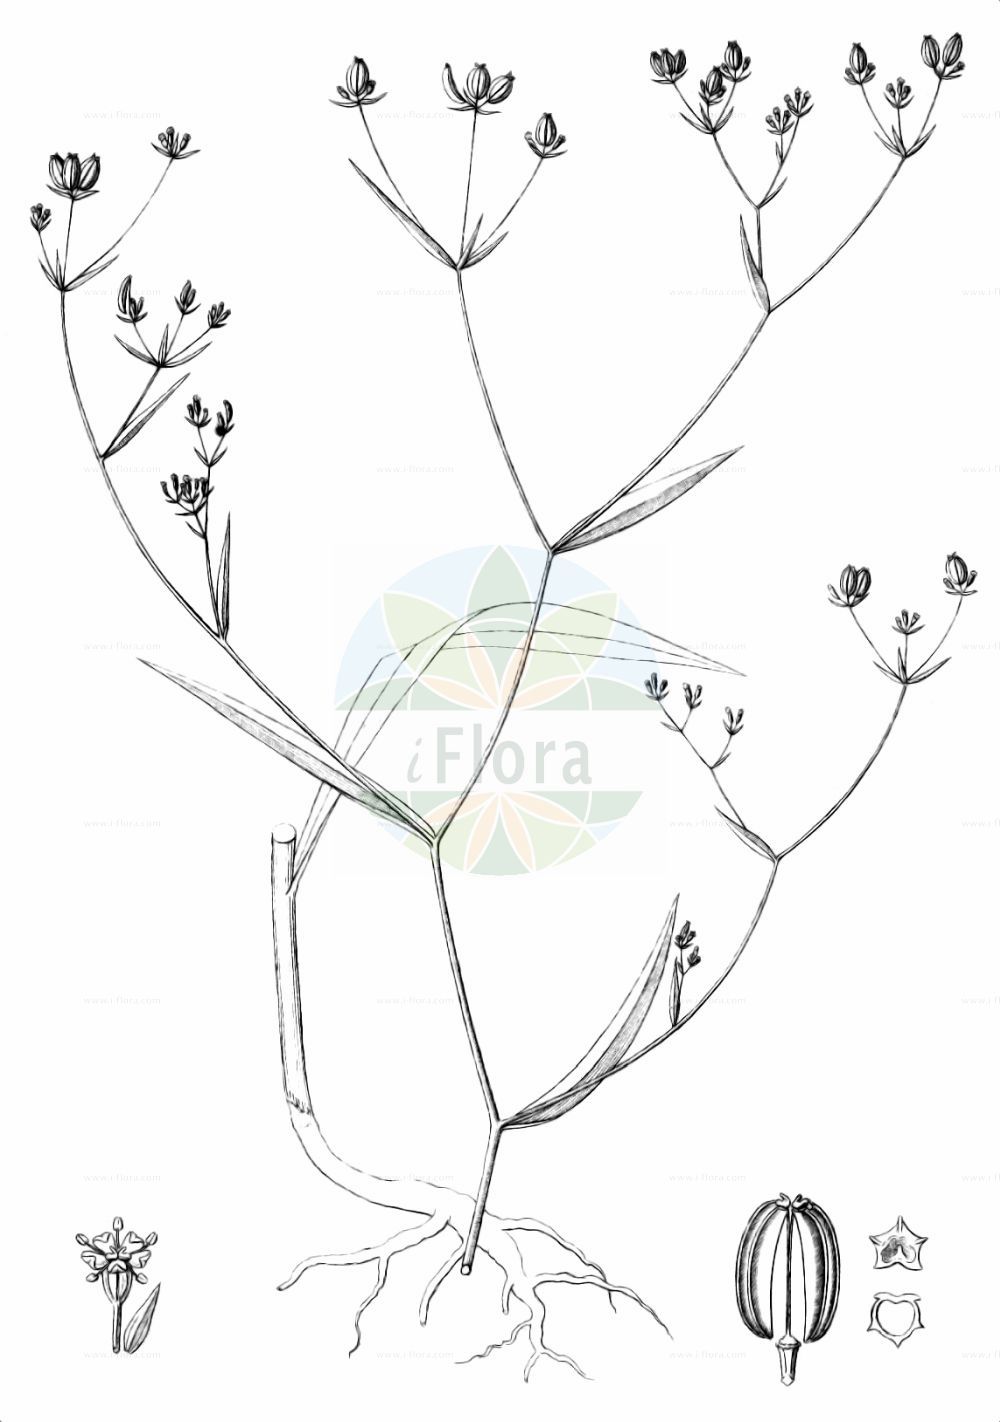 Historische Abbildung von Bupleurum praealtum. Das Bild zeigt Blatt, Bluete, Frucht und Same. ---- Historical Drawing of Bupleurum praealtum. The image is showing leaf, flower, fruit and seed.(Bupleurum praealtum,Bupleurum praealtum,Bupleurum praealtum subsp. wettsteinianum,Bupleurum,Hasenohr,Hare's Ear,Apiaceae,Doldengewächse,Carrot family,Blatt,Bluete,Frucht,Same,leaf,flower,fruit,seed,Reichenbach (1823-1832))